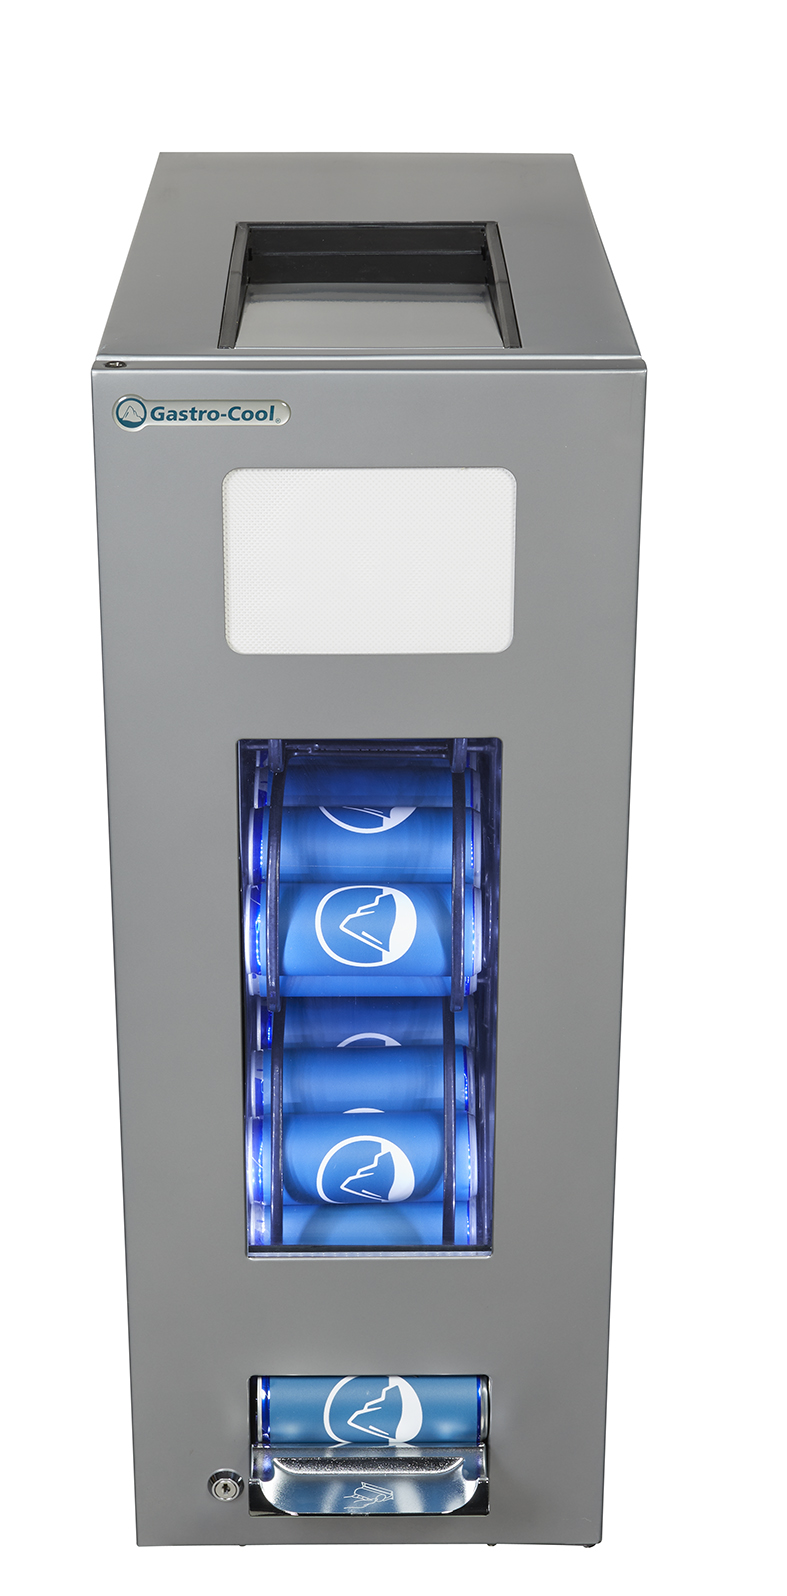 Gastro-Cool - Dosen Dispenser Kühlschrank - Silber - 250 ml slim can - GCAP50-250 - Voransicht gefüllt